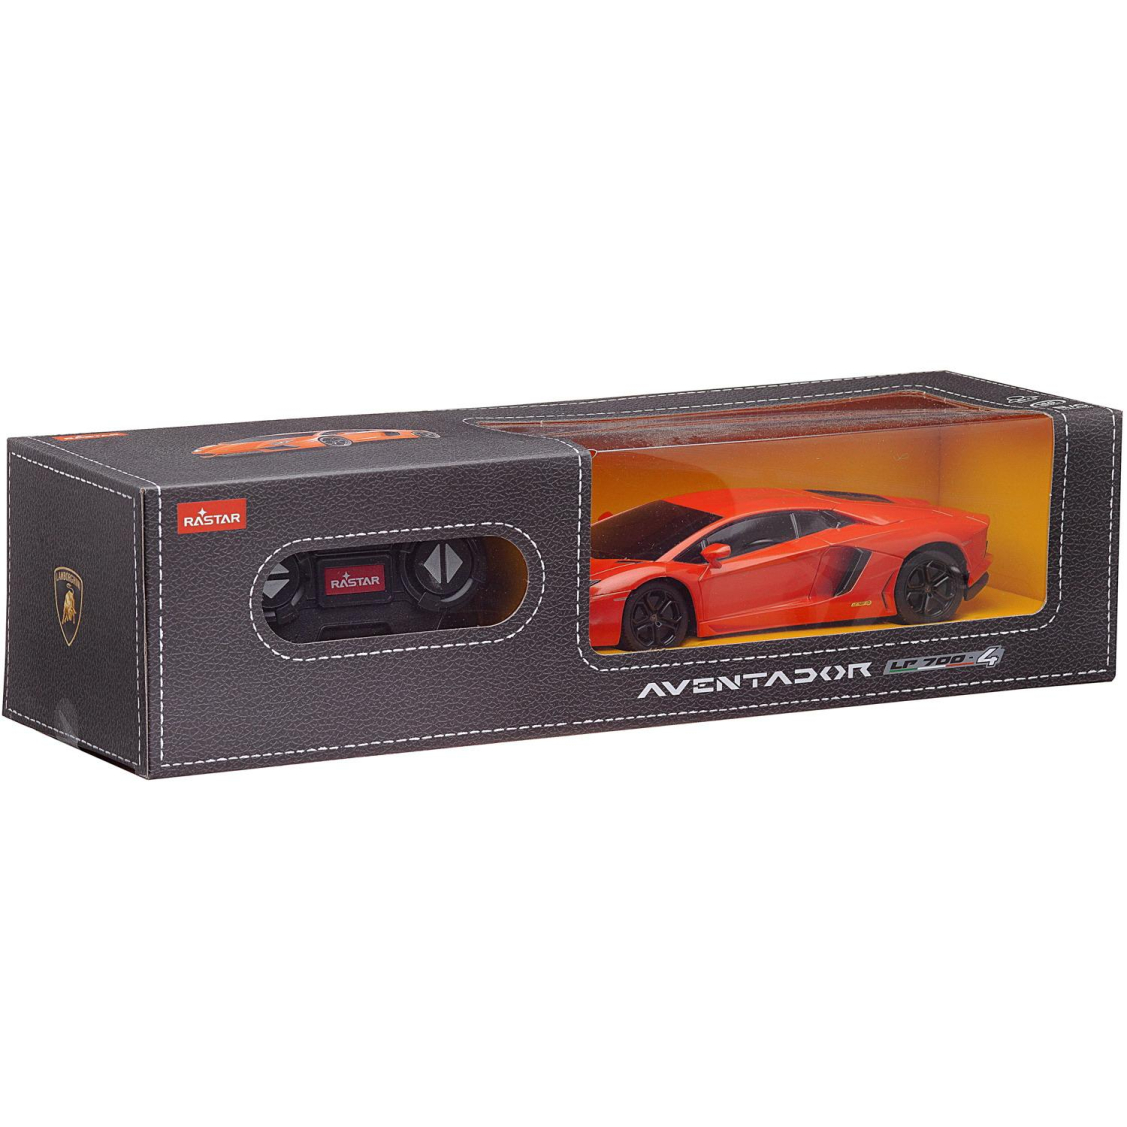 Машина р/у 1:24 Aventador LP700, цвет оранжевый